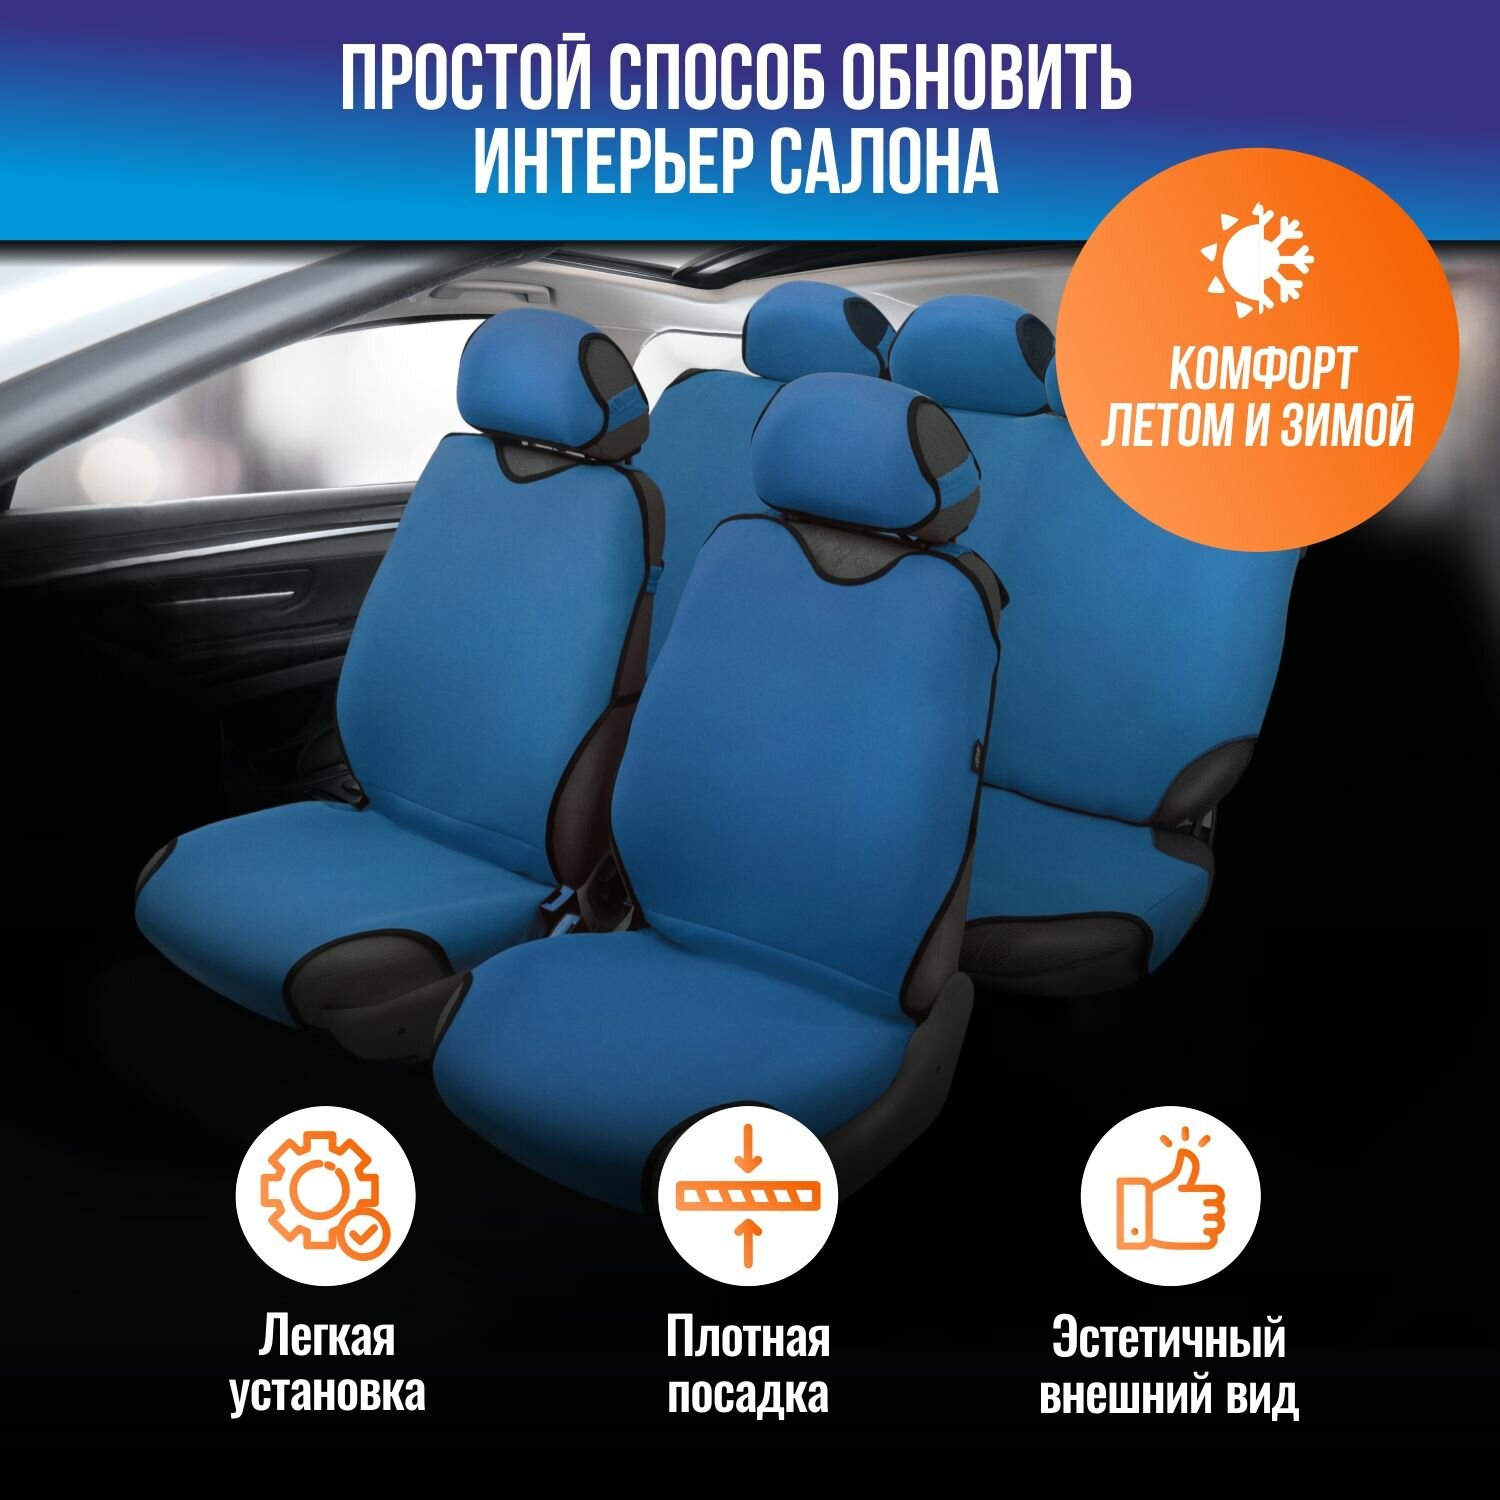 Майки на сидения SPRINT полный /темно-синий/ /к-т 4+5 пр./, чехлы универсальные